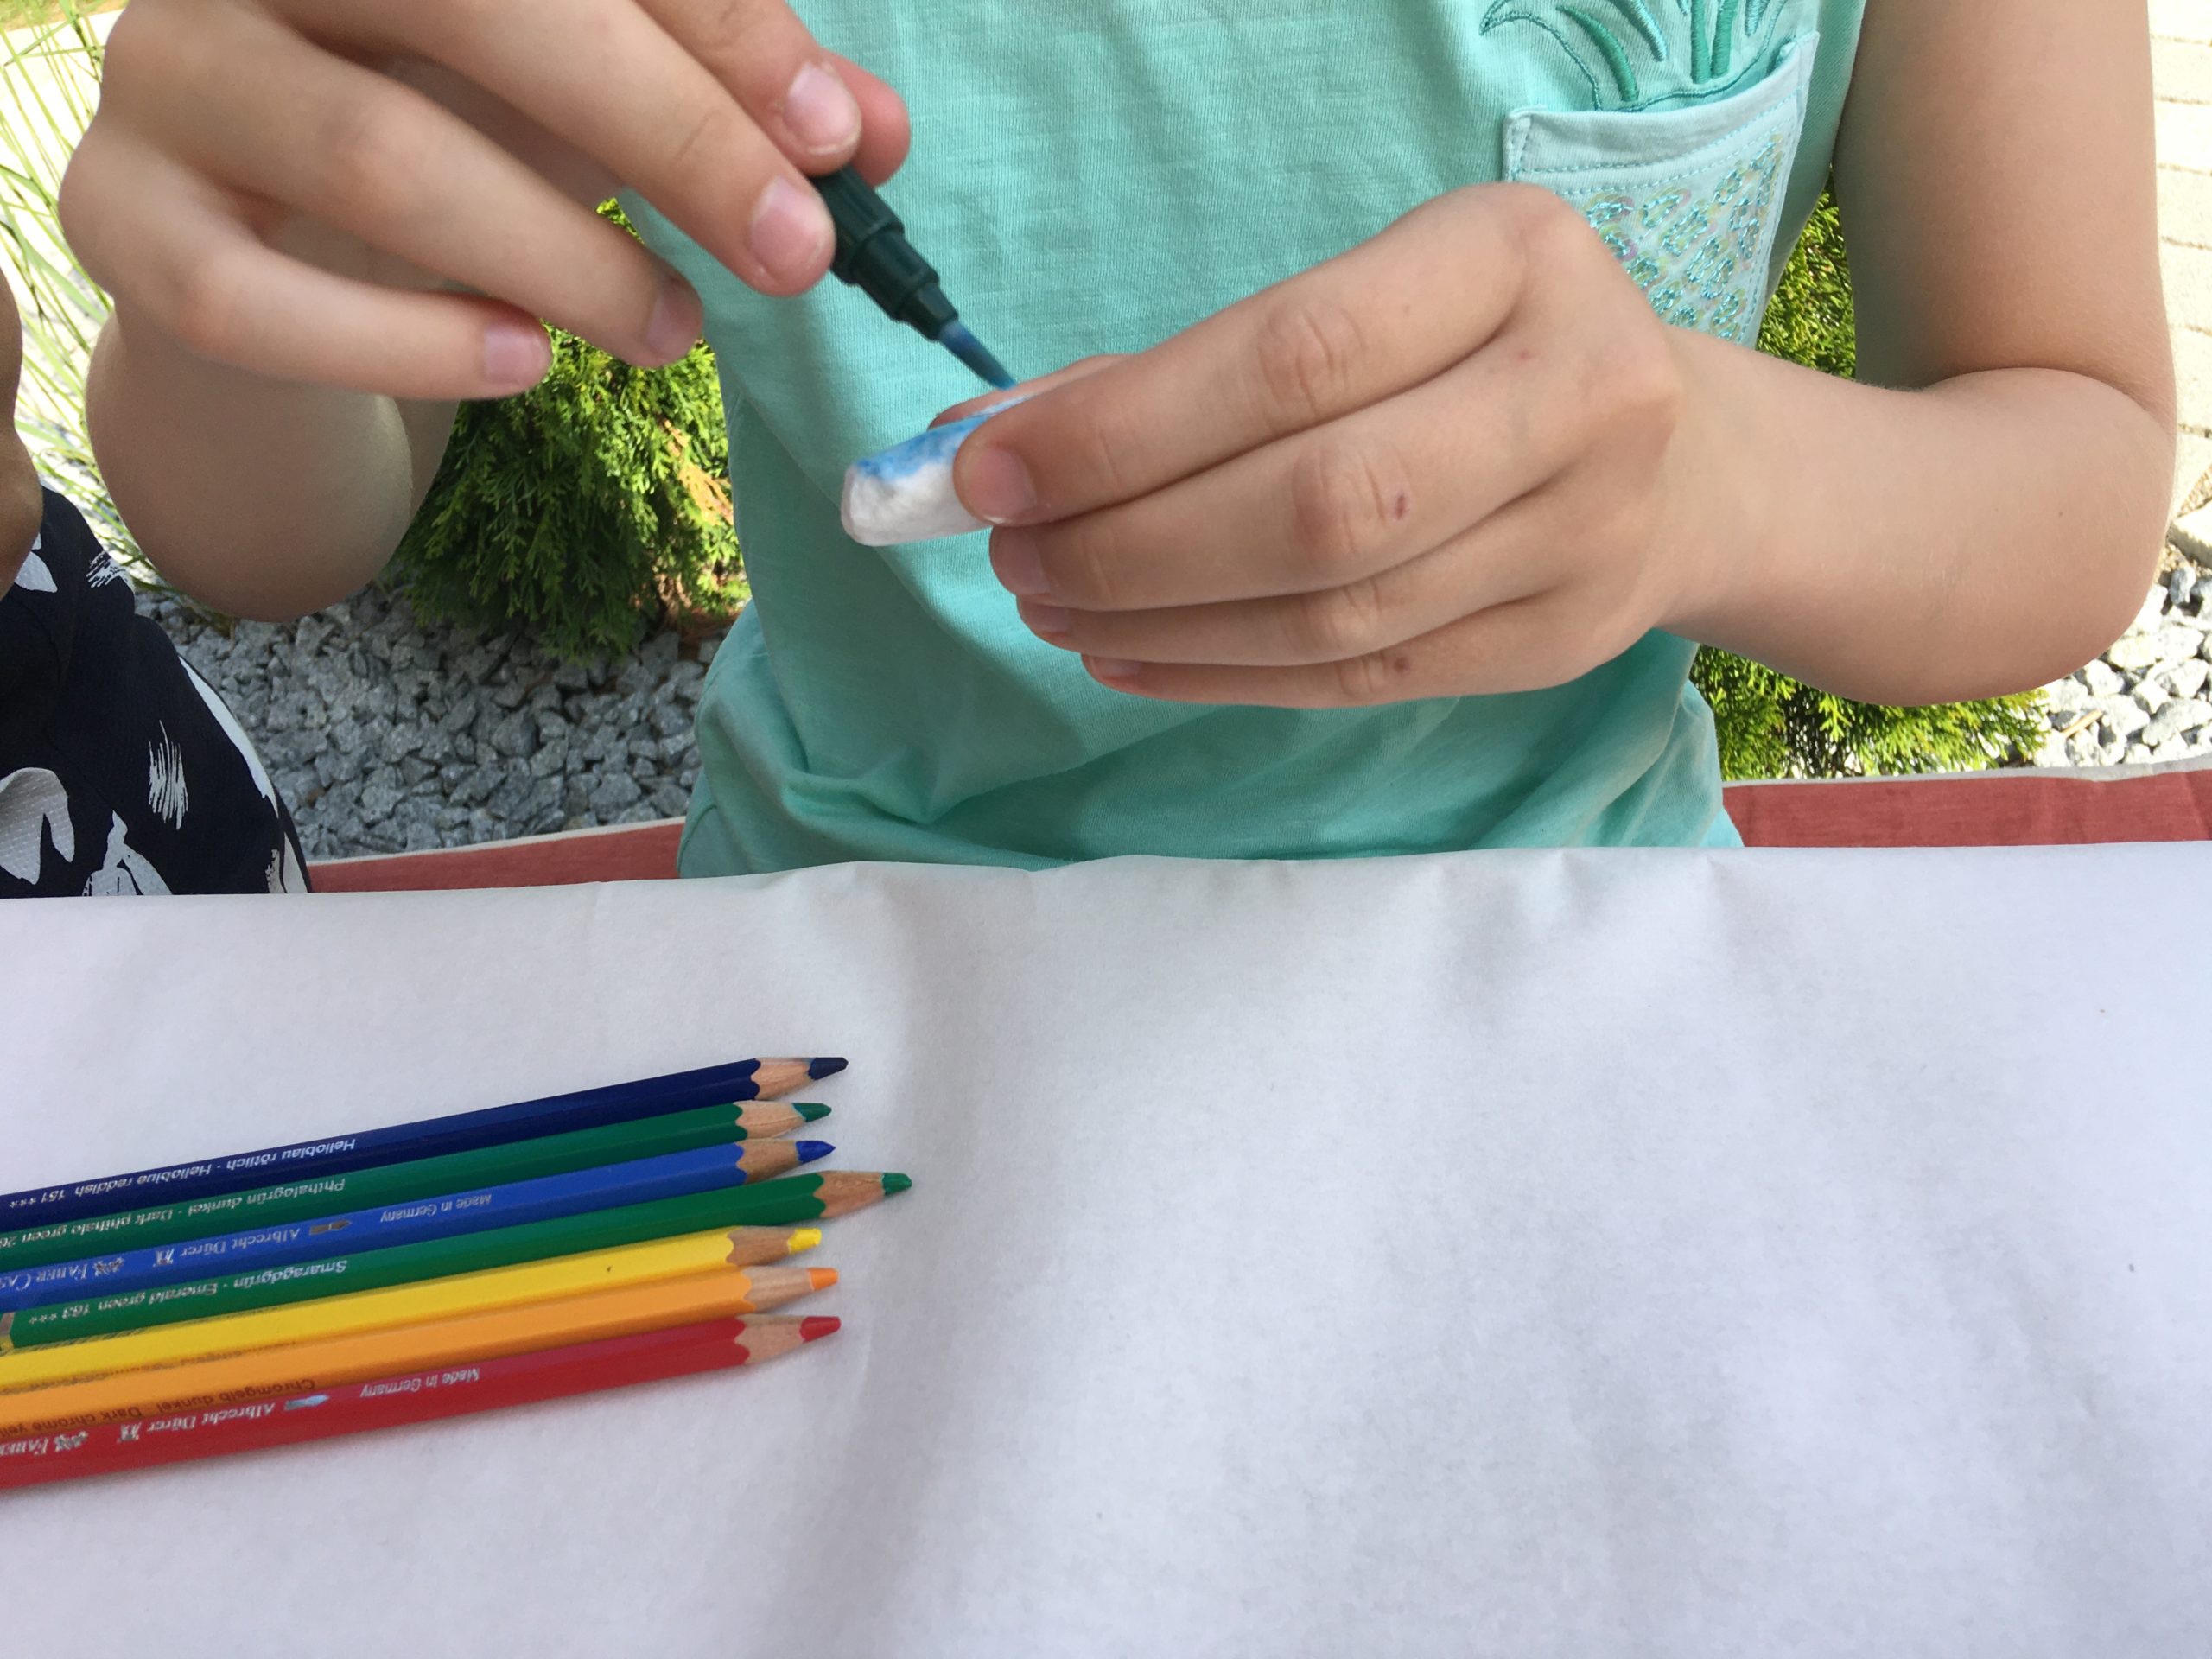 Bild zum Schritt 3 für die Kinder-Beschäftigung: 'Wir haben Aquarellbuntstifte verwendet. Nach dem Malen können Farbverläufe mit...'